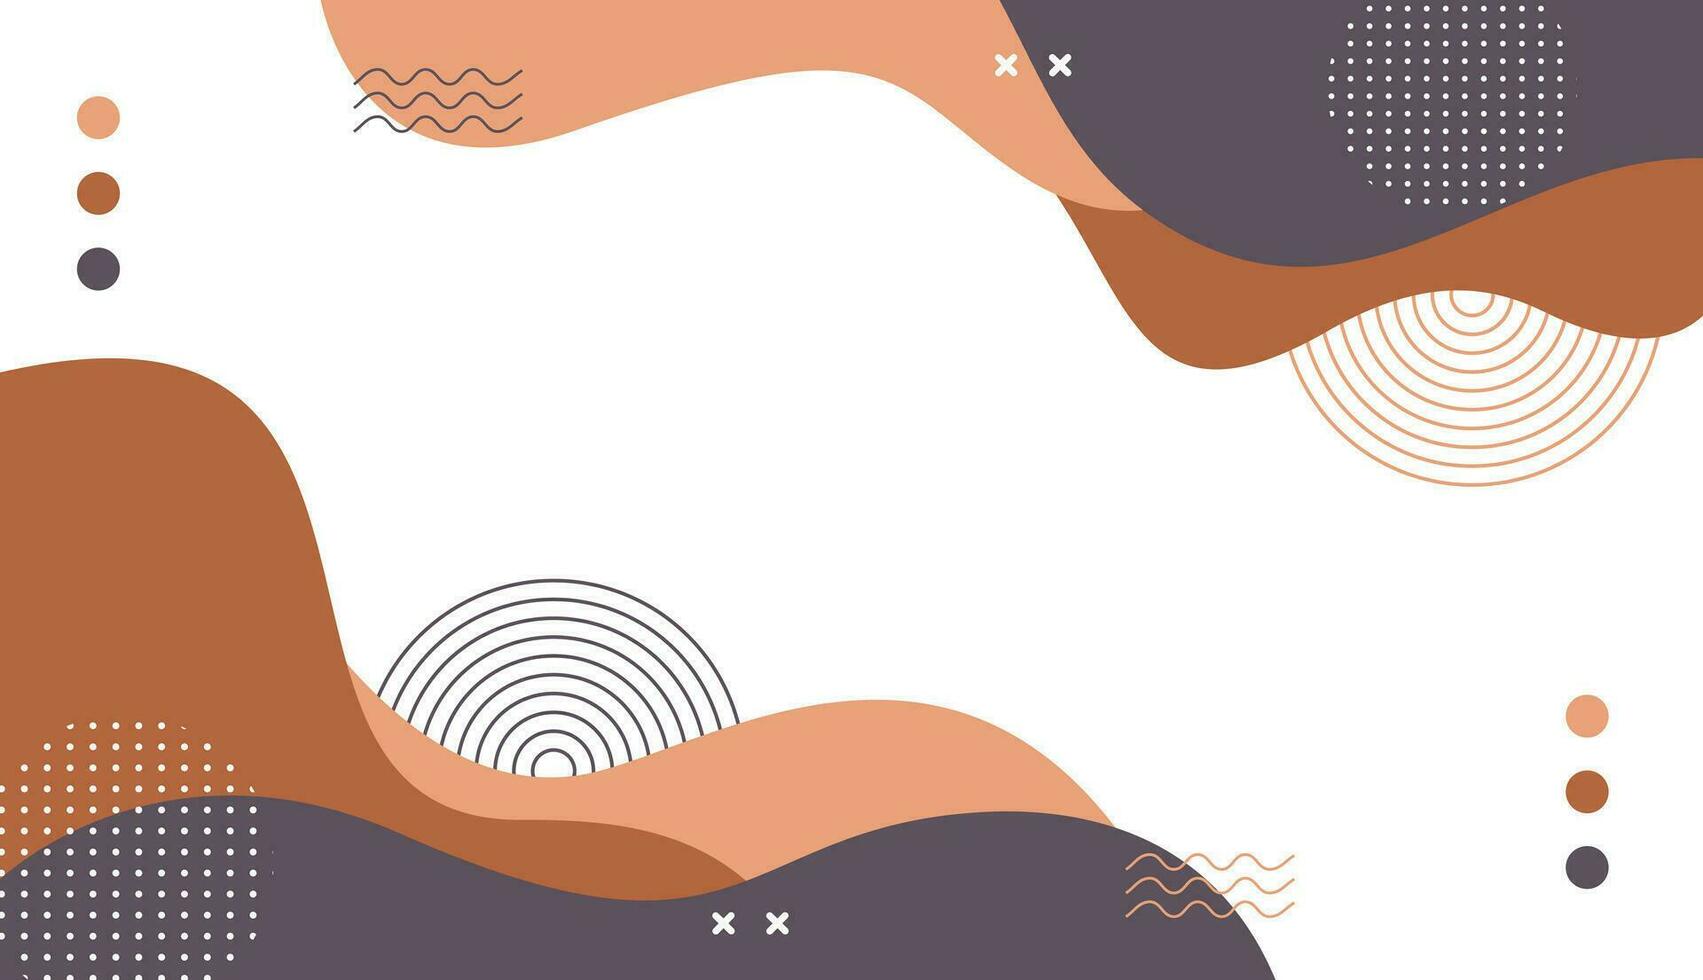 abstrakt bakgrund minimalistisk, hand dragen med geometrisk och organisk former i annorlunda nyanser av brun. enkel trendig platt vektor illustration, fri vektor